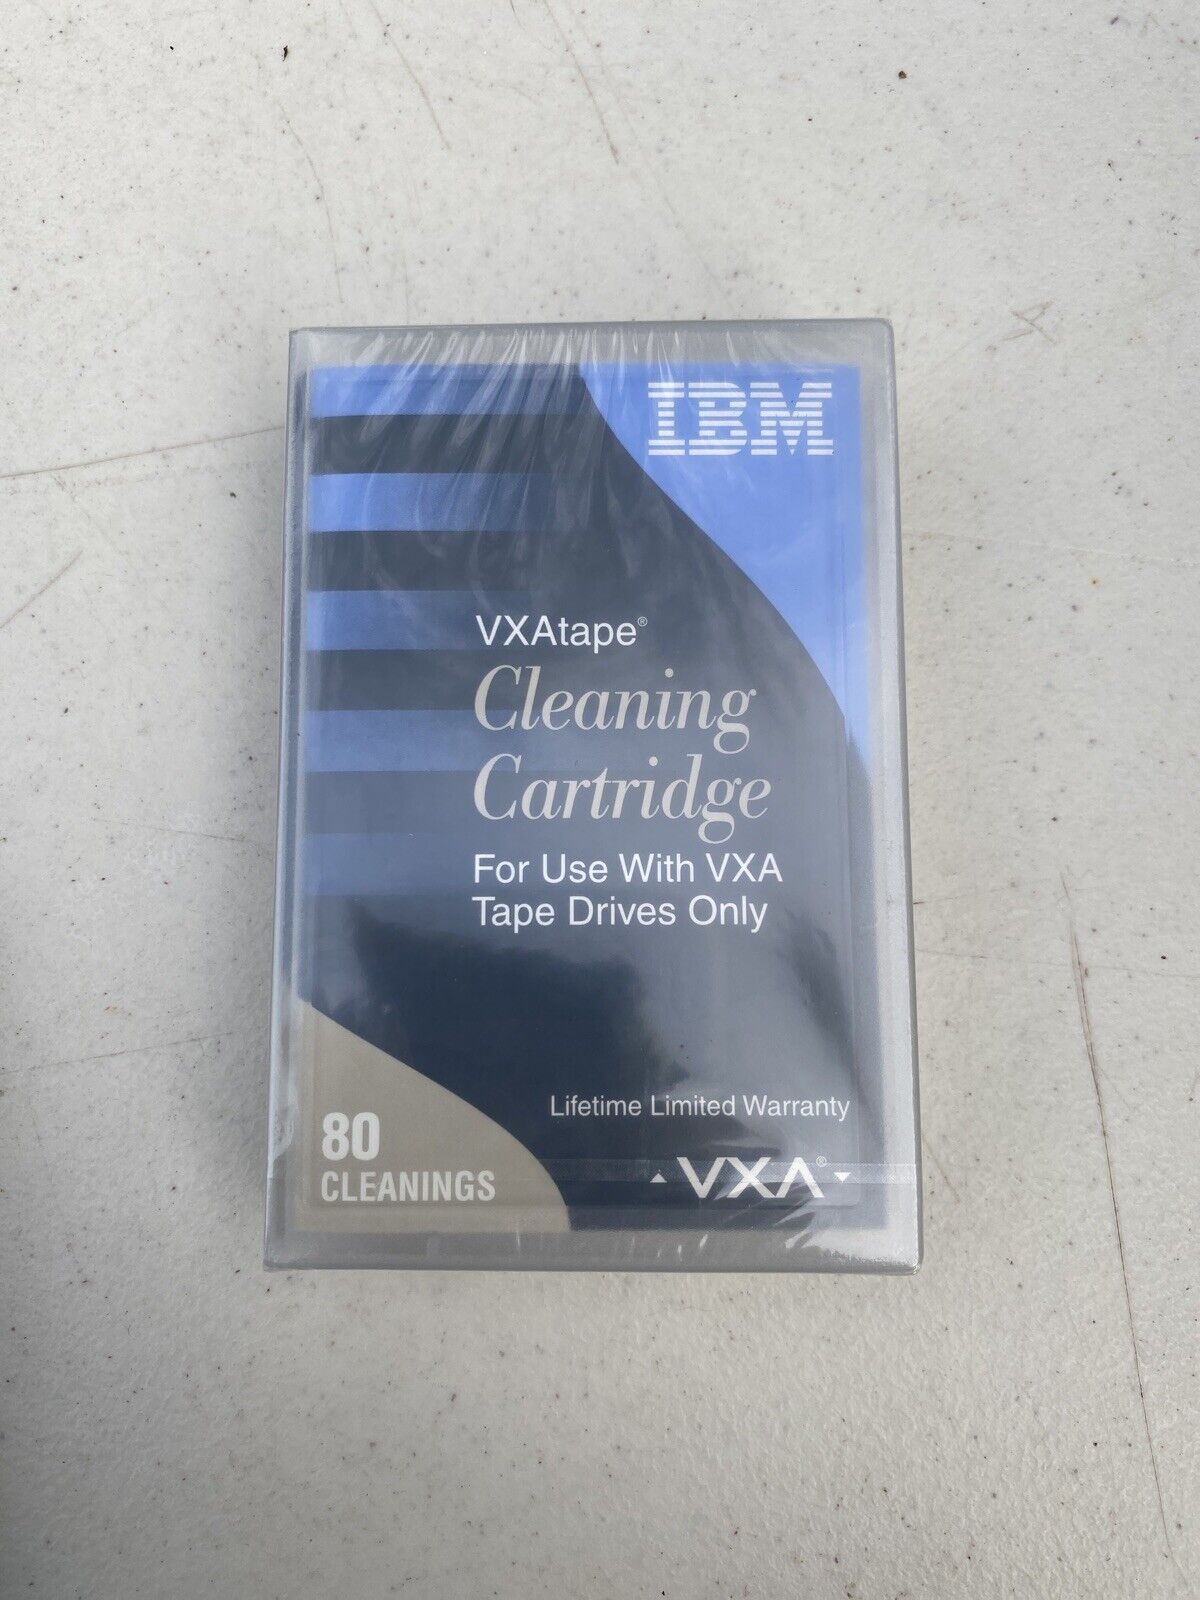 VXAtape IBM Cleaning Cartridge for VXA-2 Tape Drives 24R2138 New & Sealed